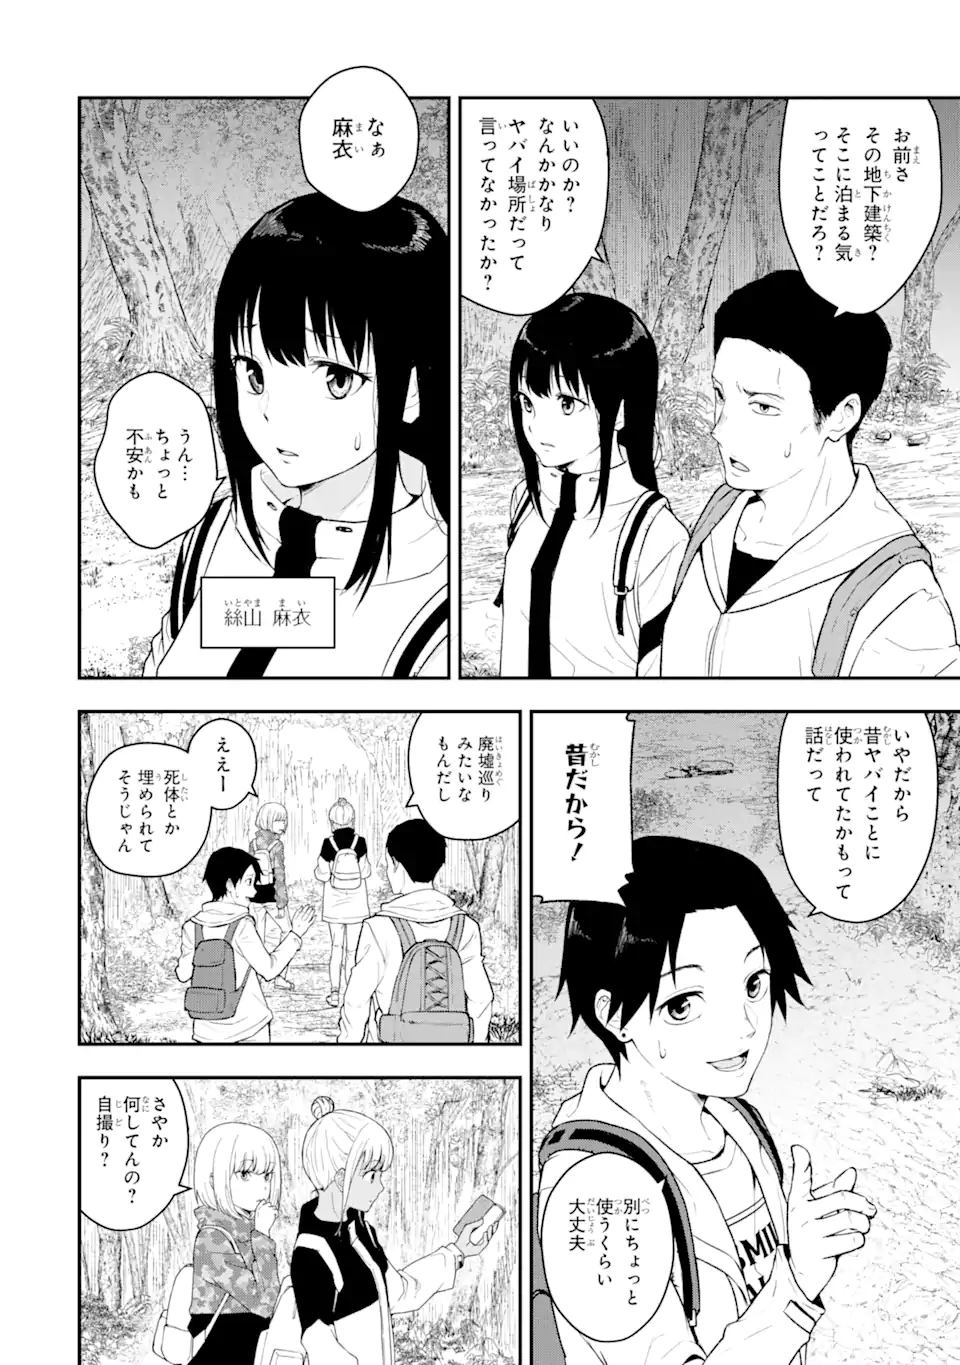 Hakobune – Shinubeki na no wa Dare ka? - Chapter 1 - Page 12